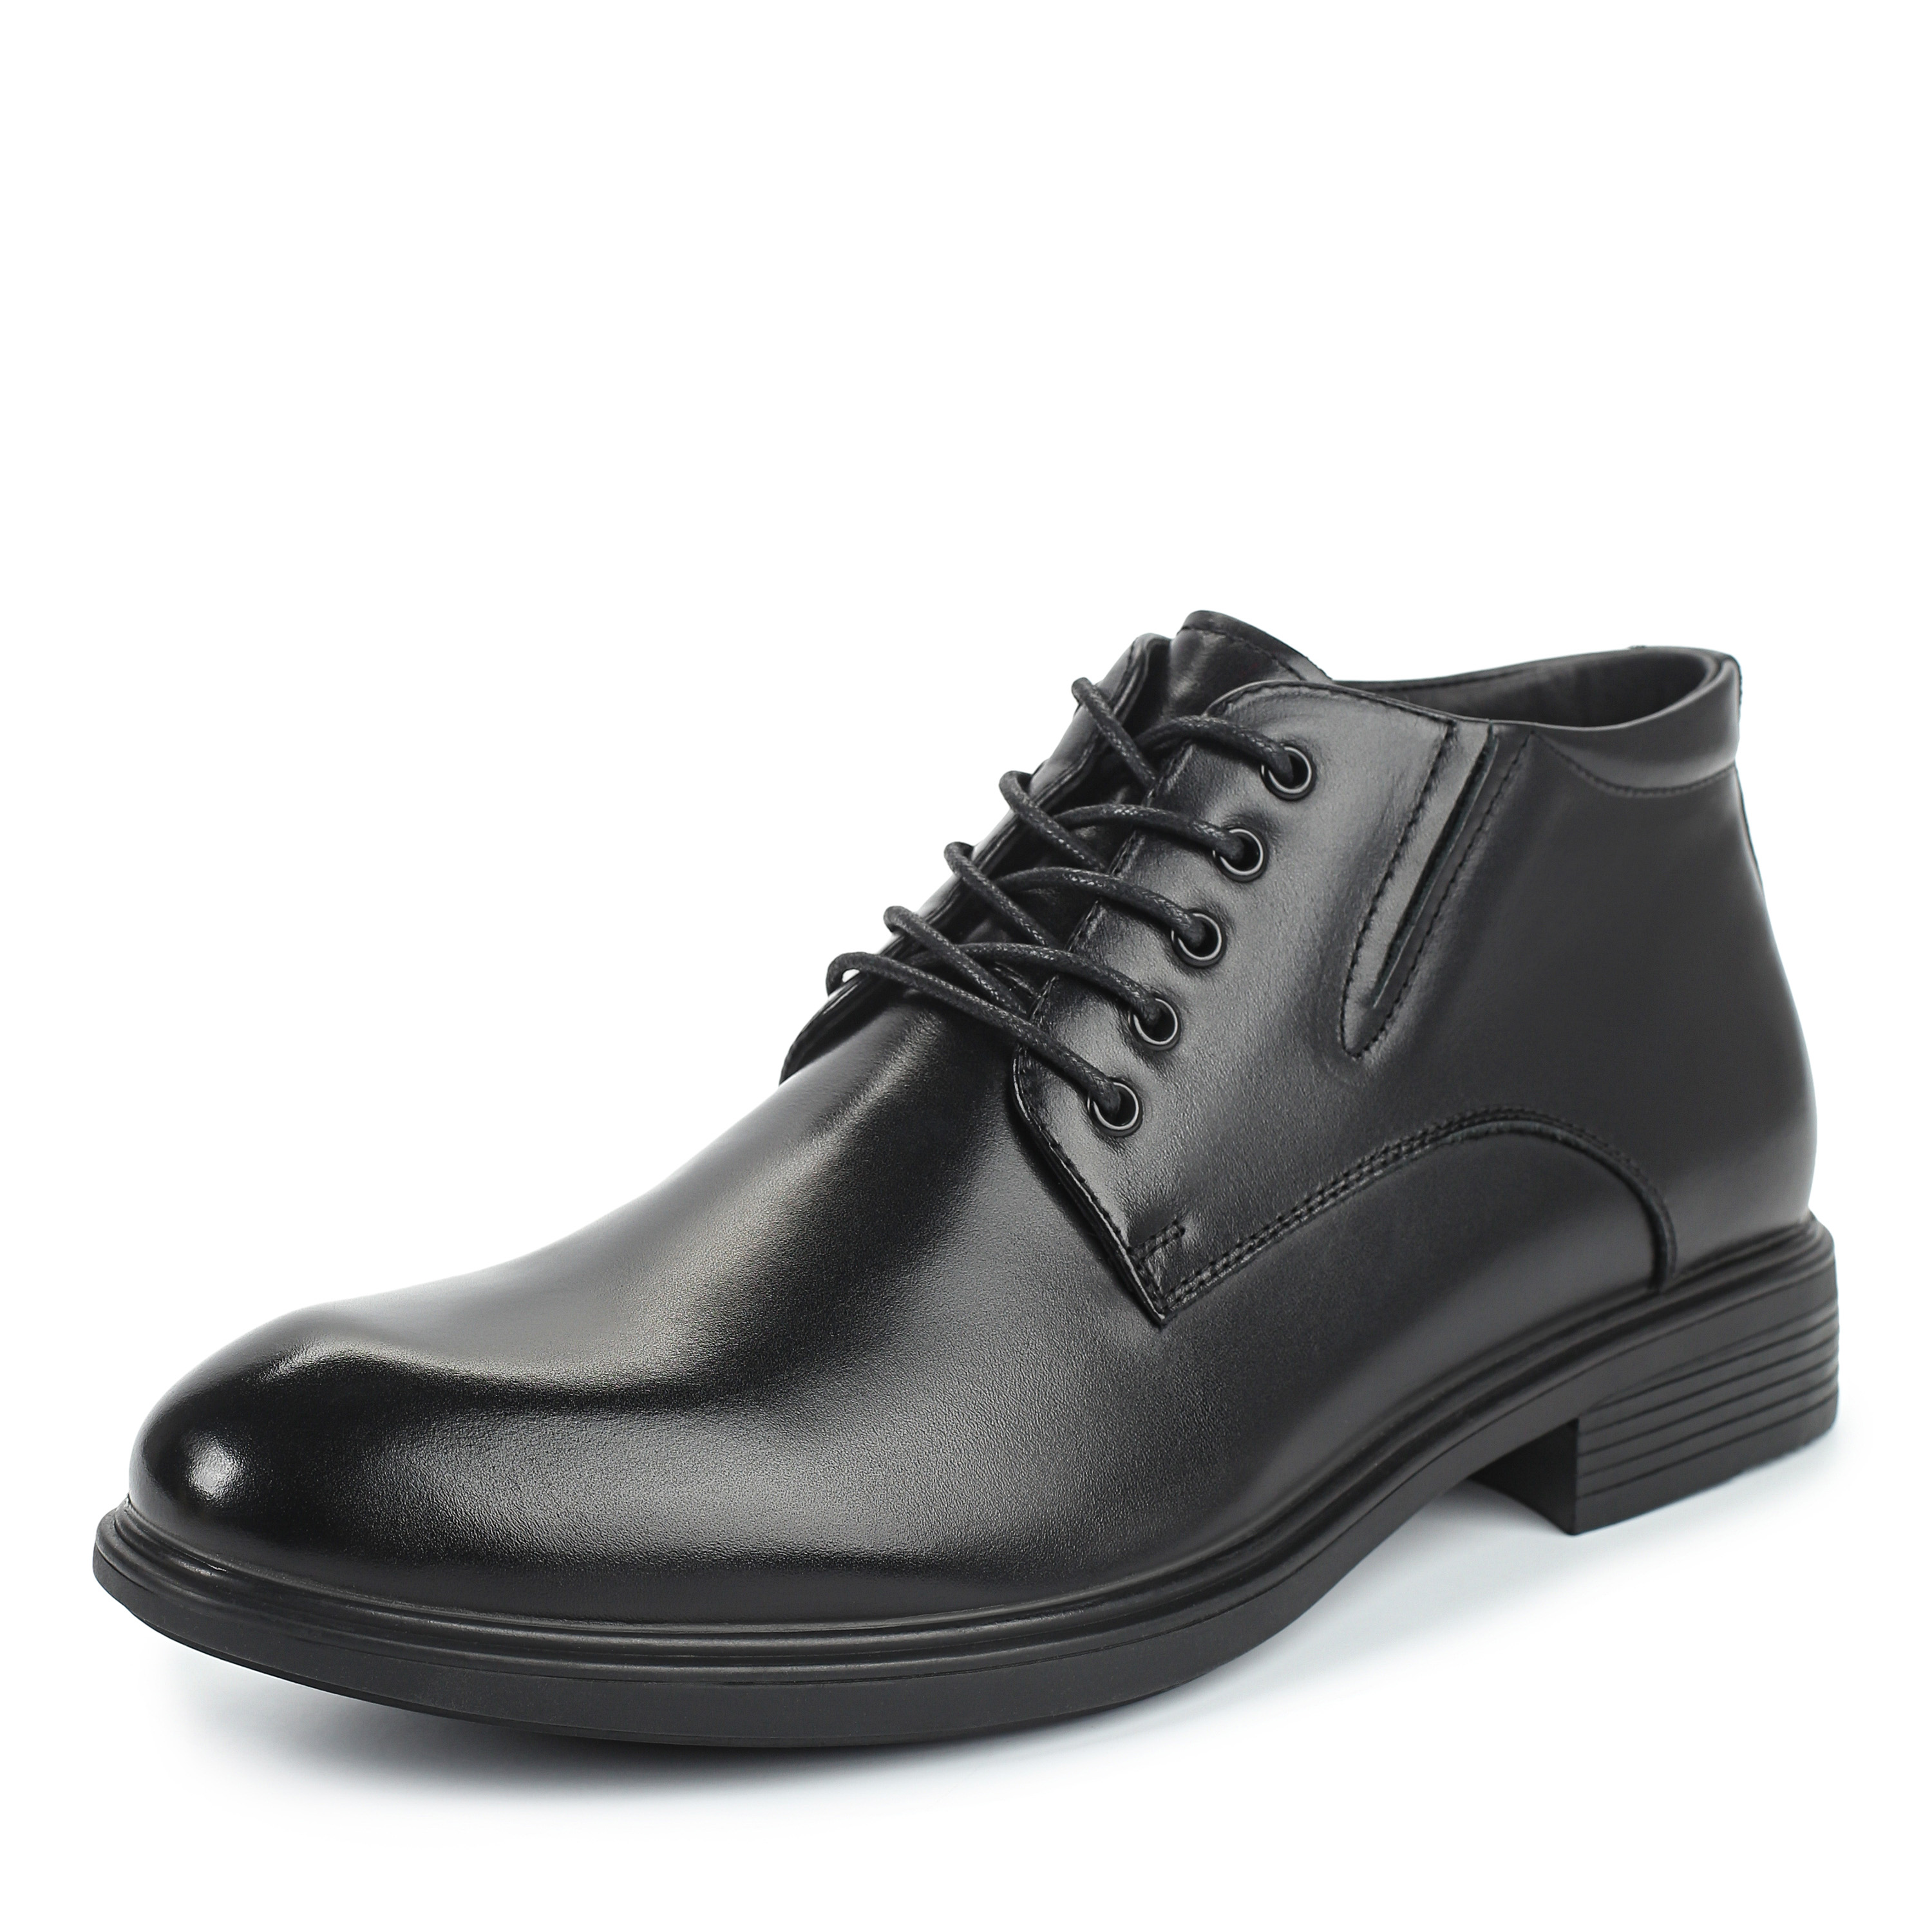 Ботинки Thomas Munz 73-080B-2101, цвет черный, размер 40 дерби - фото 2